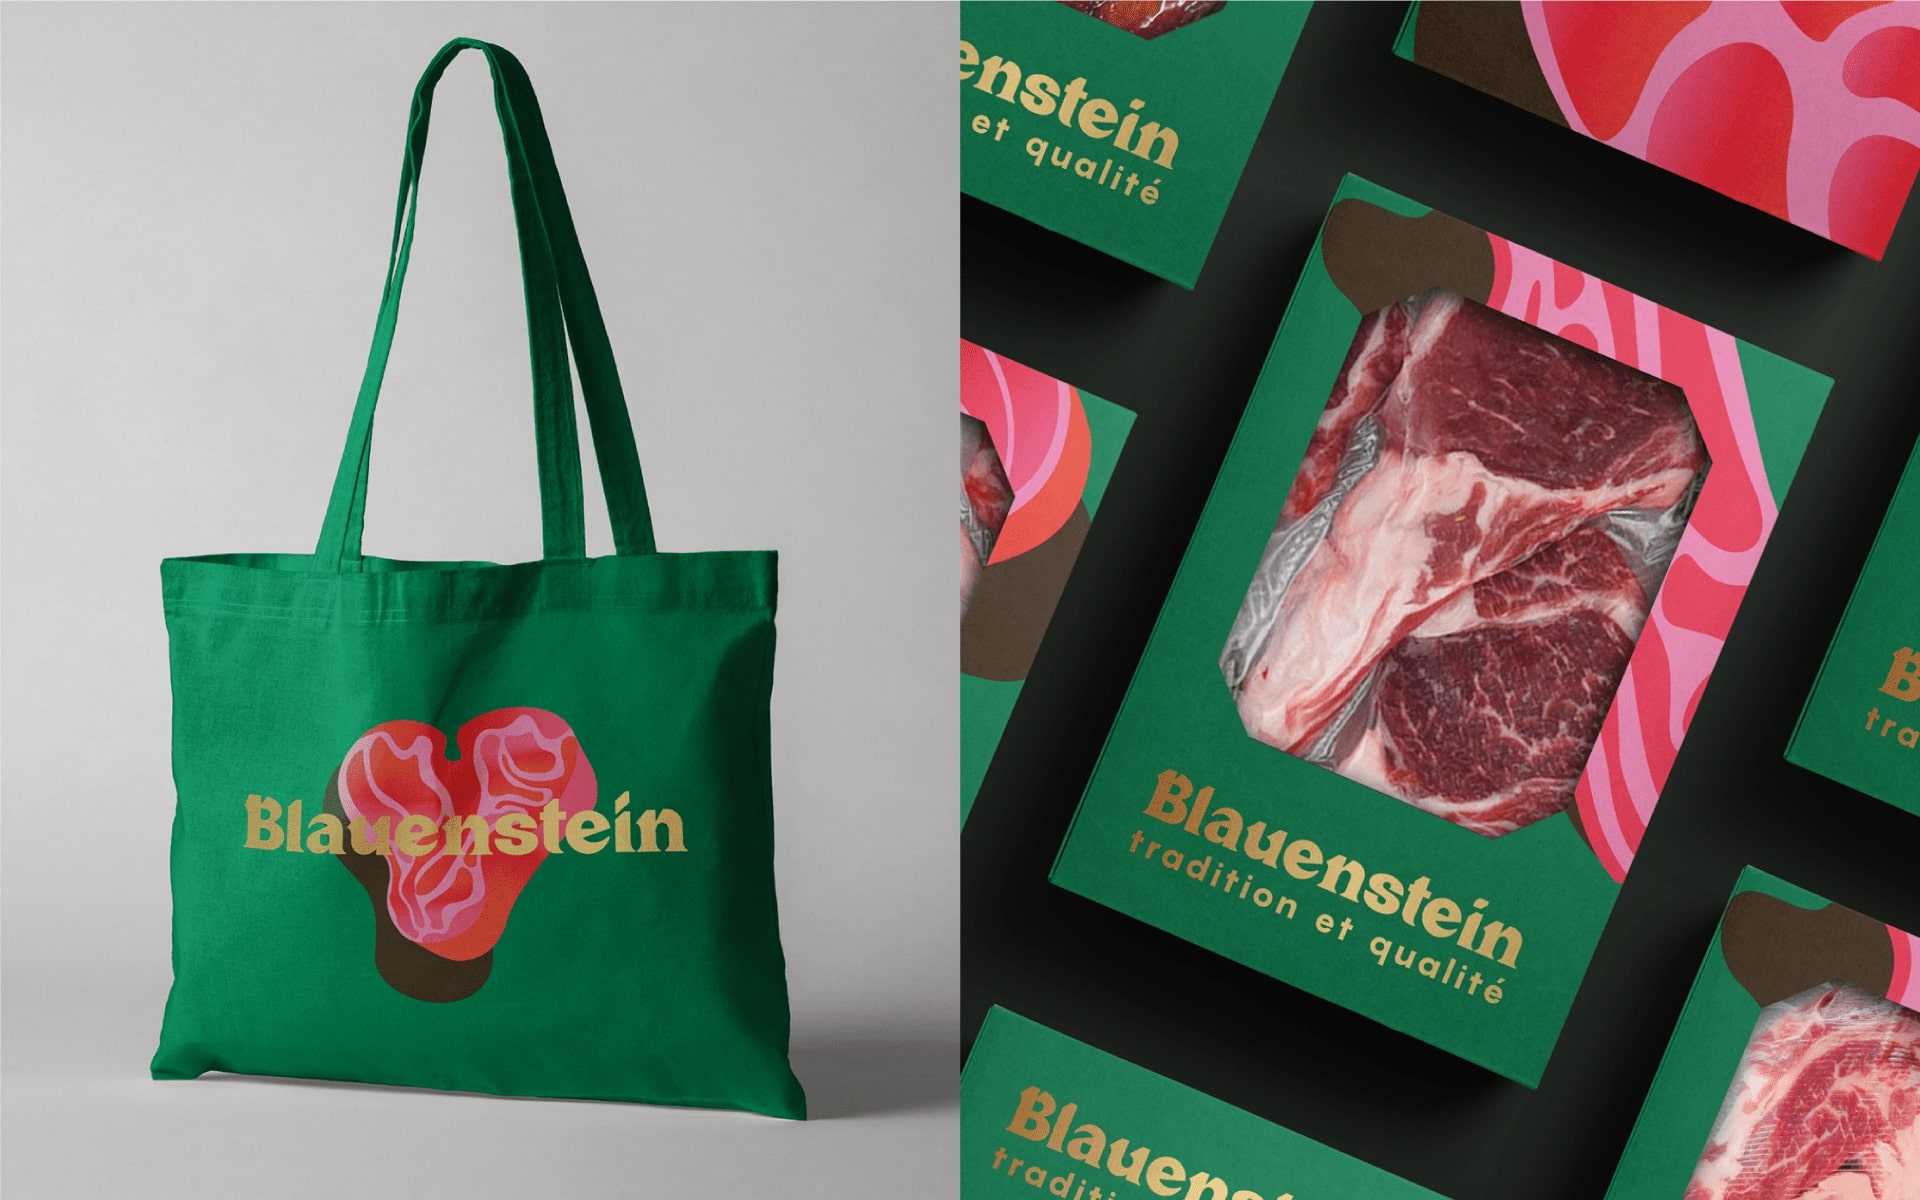 Blauenstein Farm Shop Visual Identity